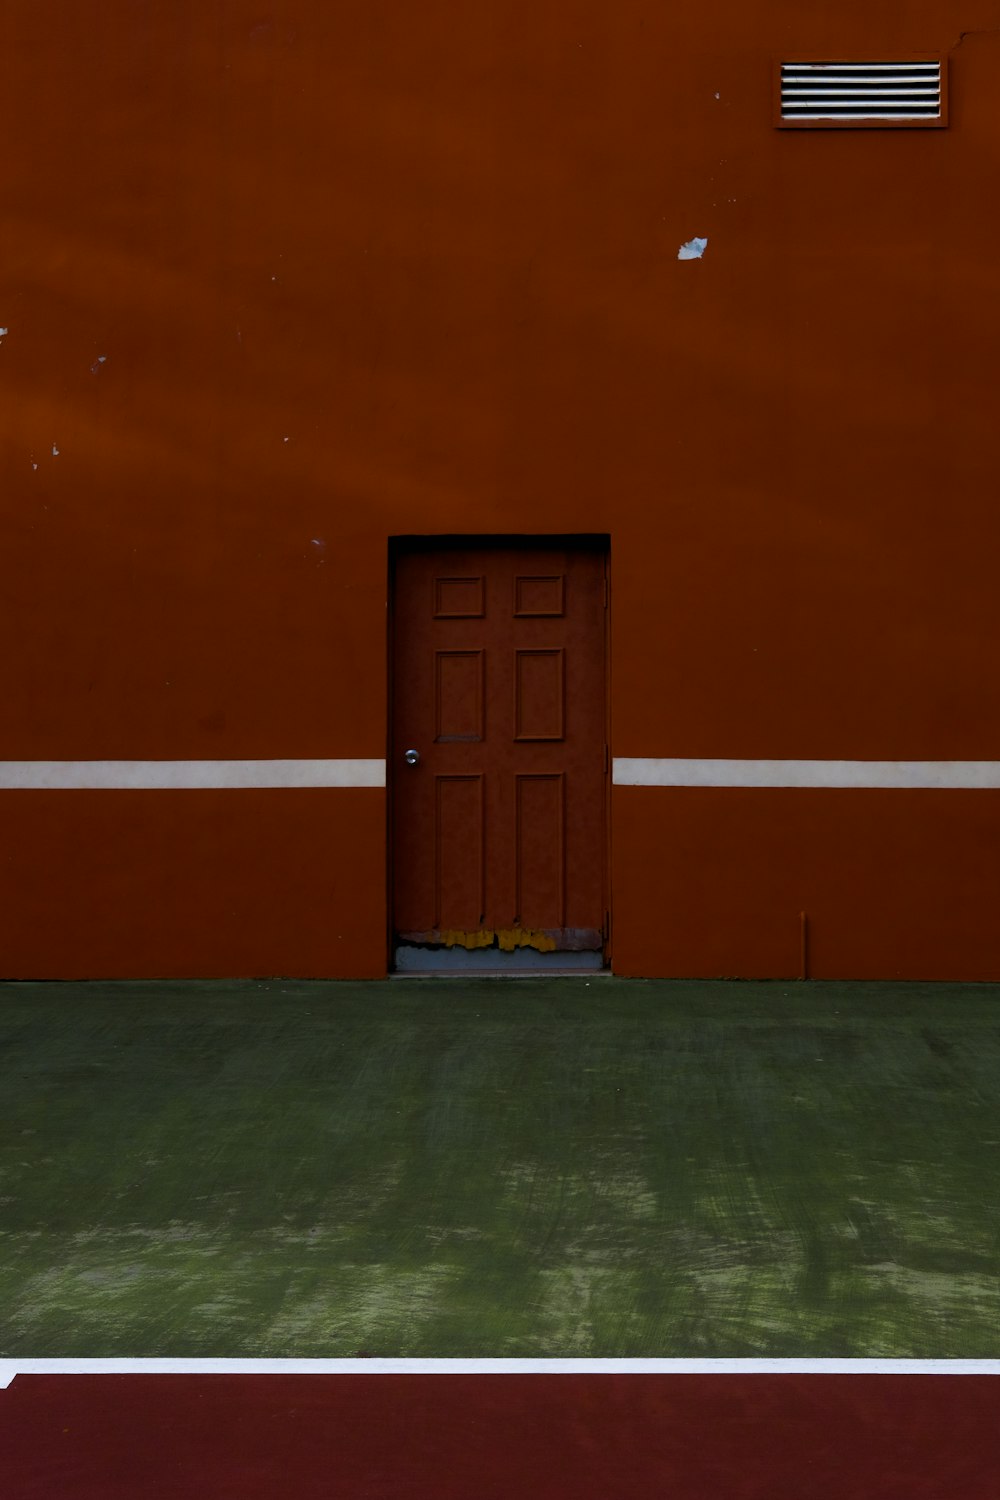 a door in an orange wall